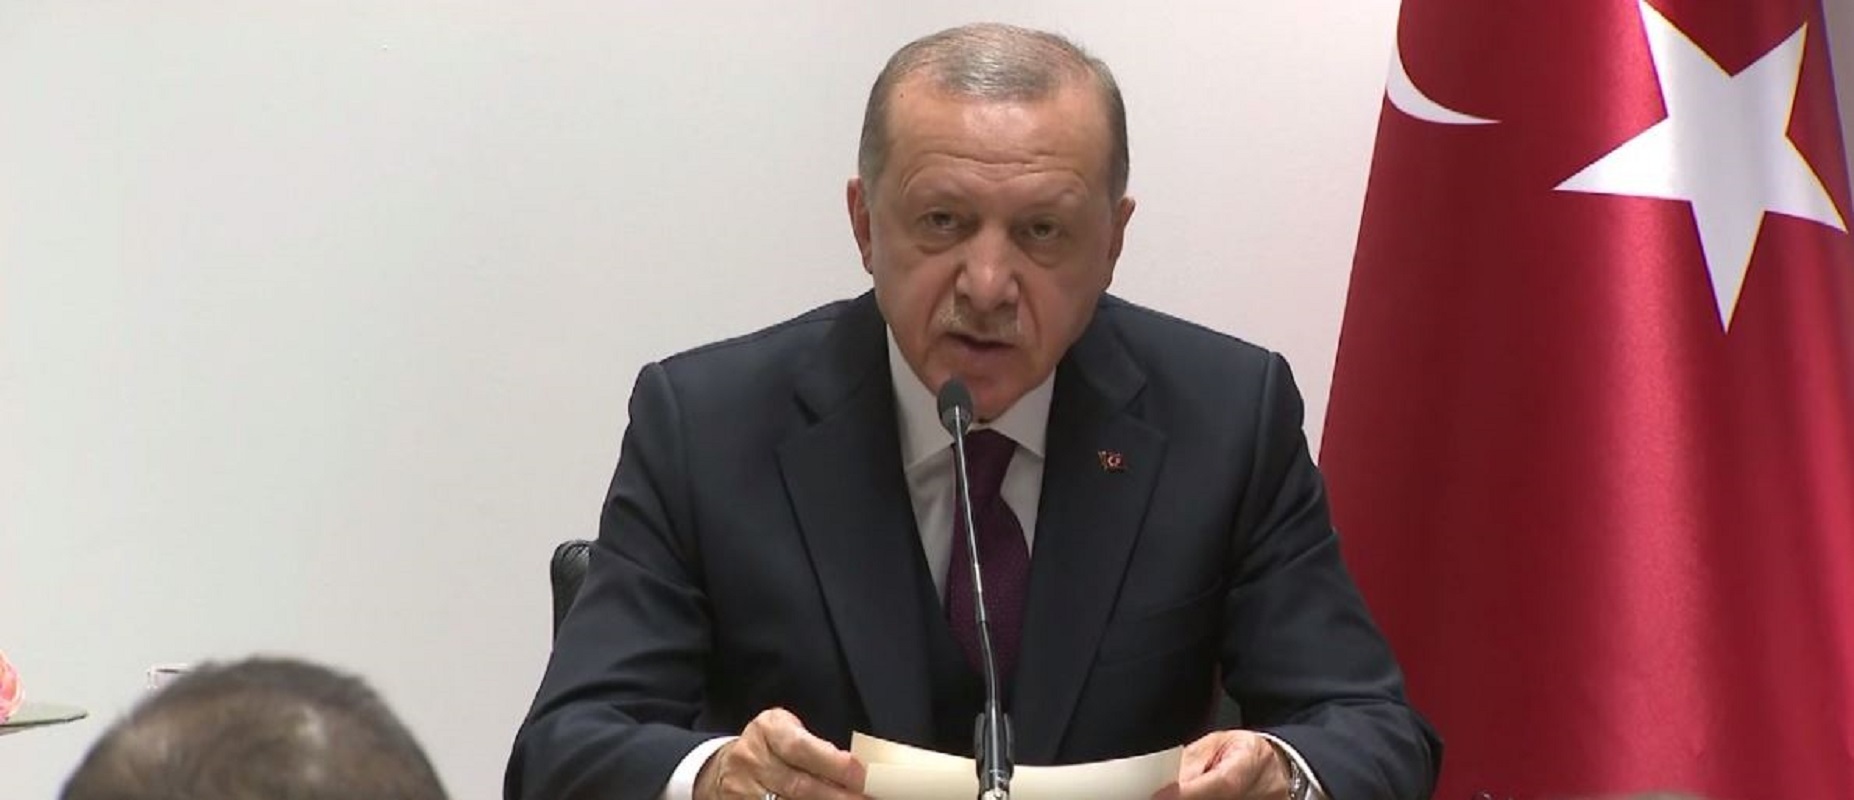 أردوغان: لا بد من مضاعفة الجهود لحل الأزمة في سوريا ونحن الطرف الوحيد الذي حارب 